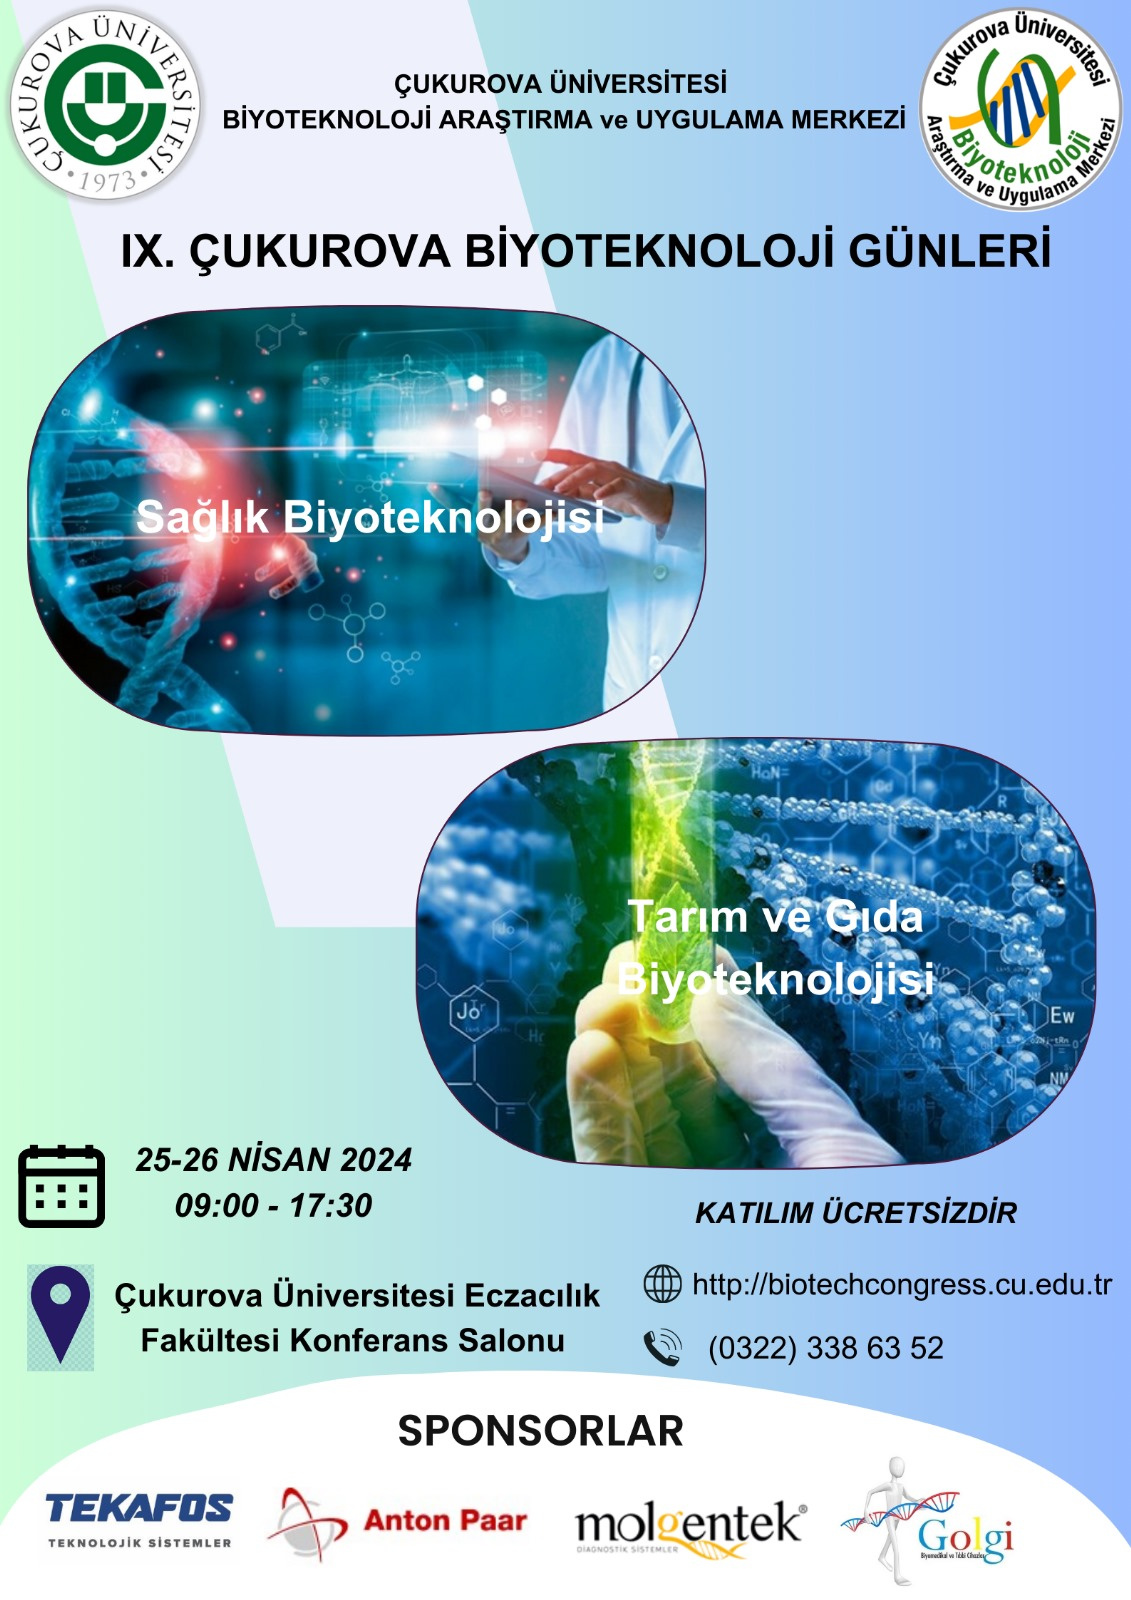 IX. Çukurova Biyoteknoloji Günleri 25-26 Nisan 2024 tarihlerinde Çukurova Üniversitesi Eczacılık Fakültesi Konferans Salonunda yapılacaktır.